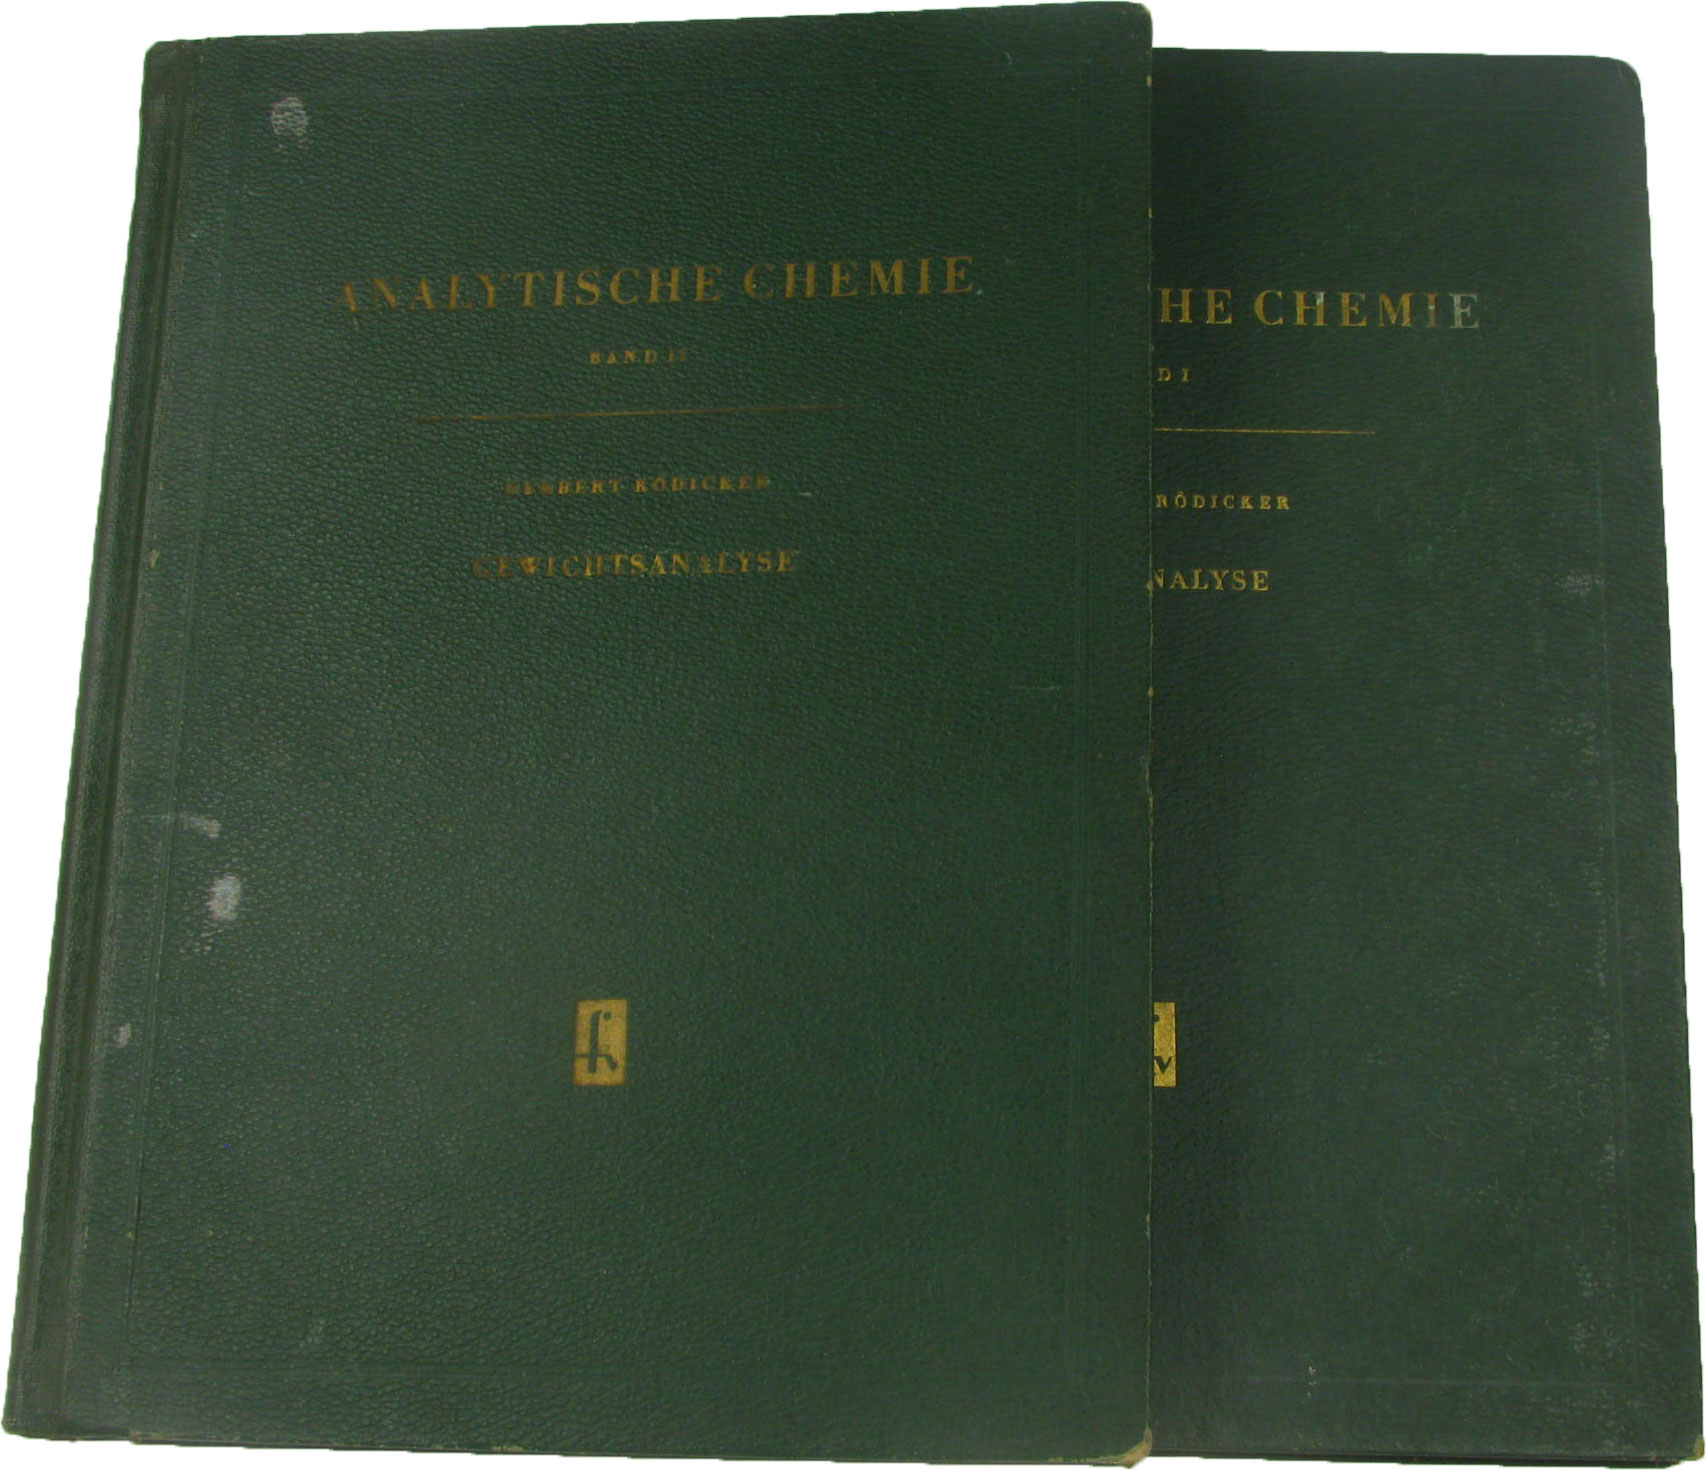 Rödicker, Herbert:  Analytische Chemie (Bde. 1 und 2) 